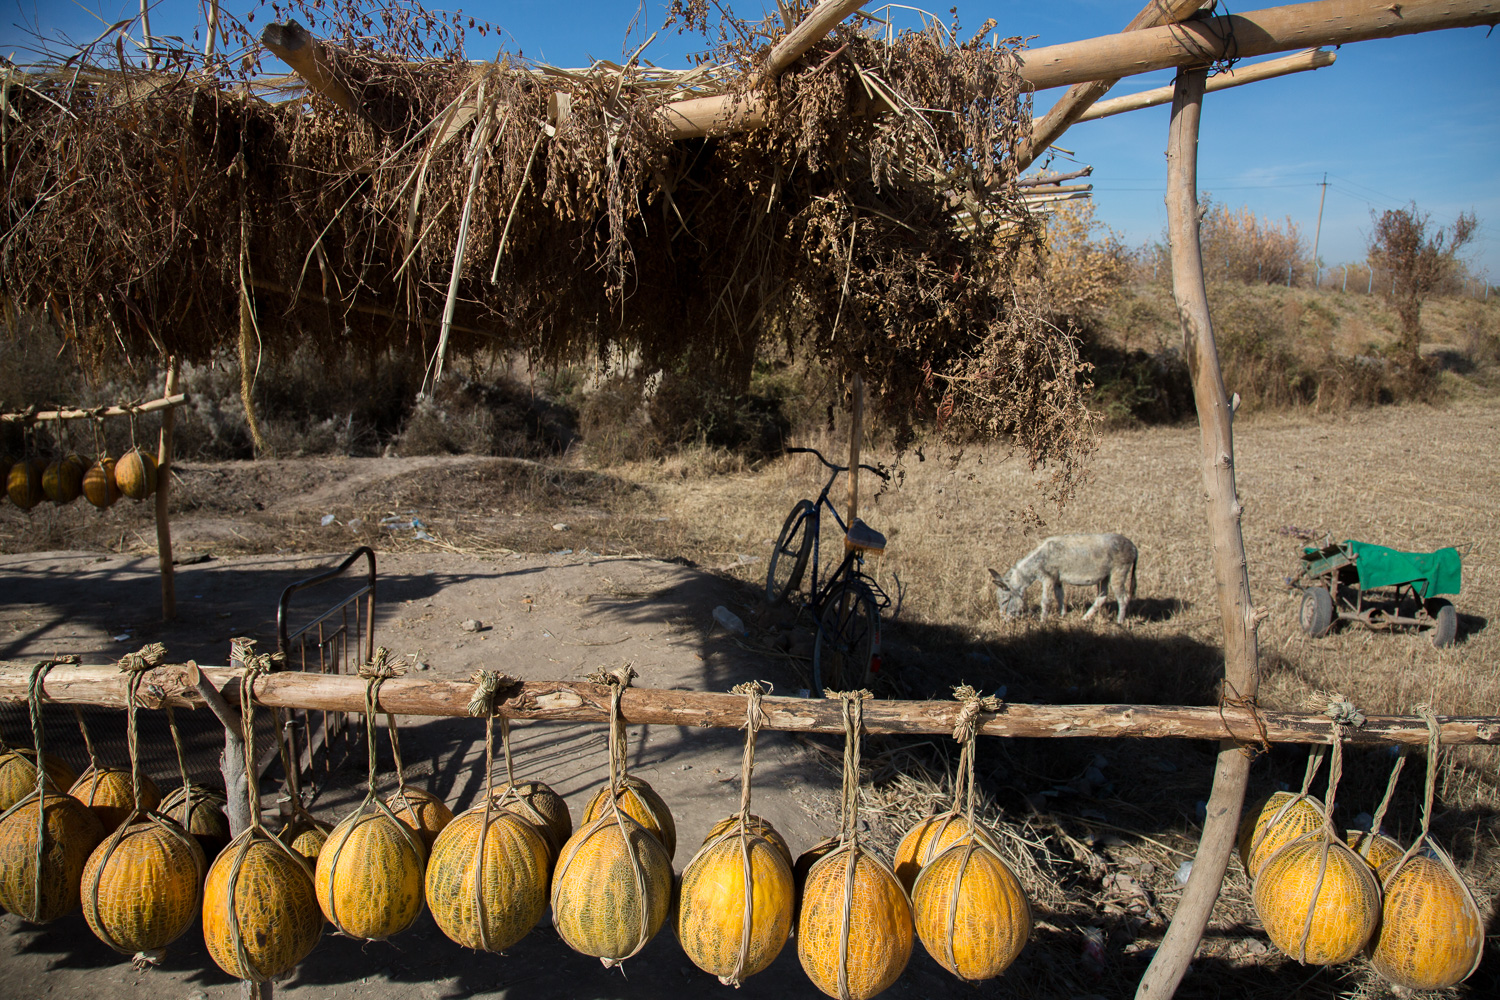  Roadside melon stall near Samarkand, Uzbekistan 